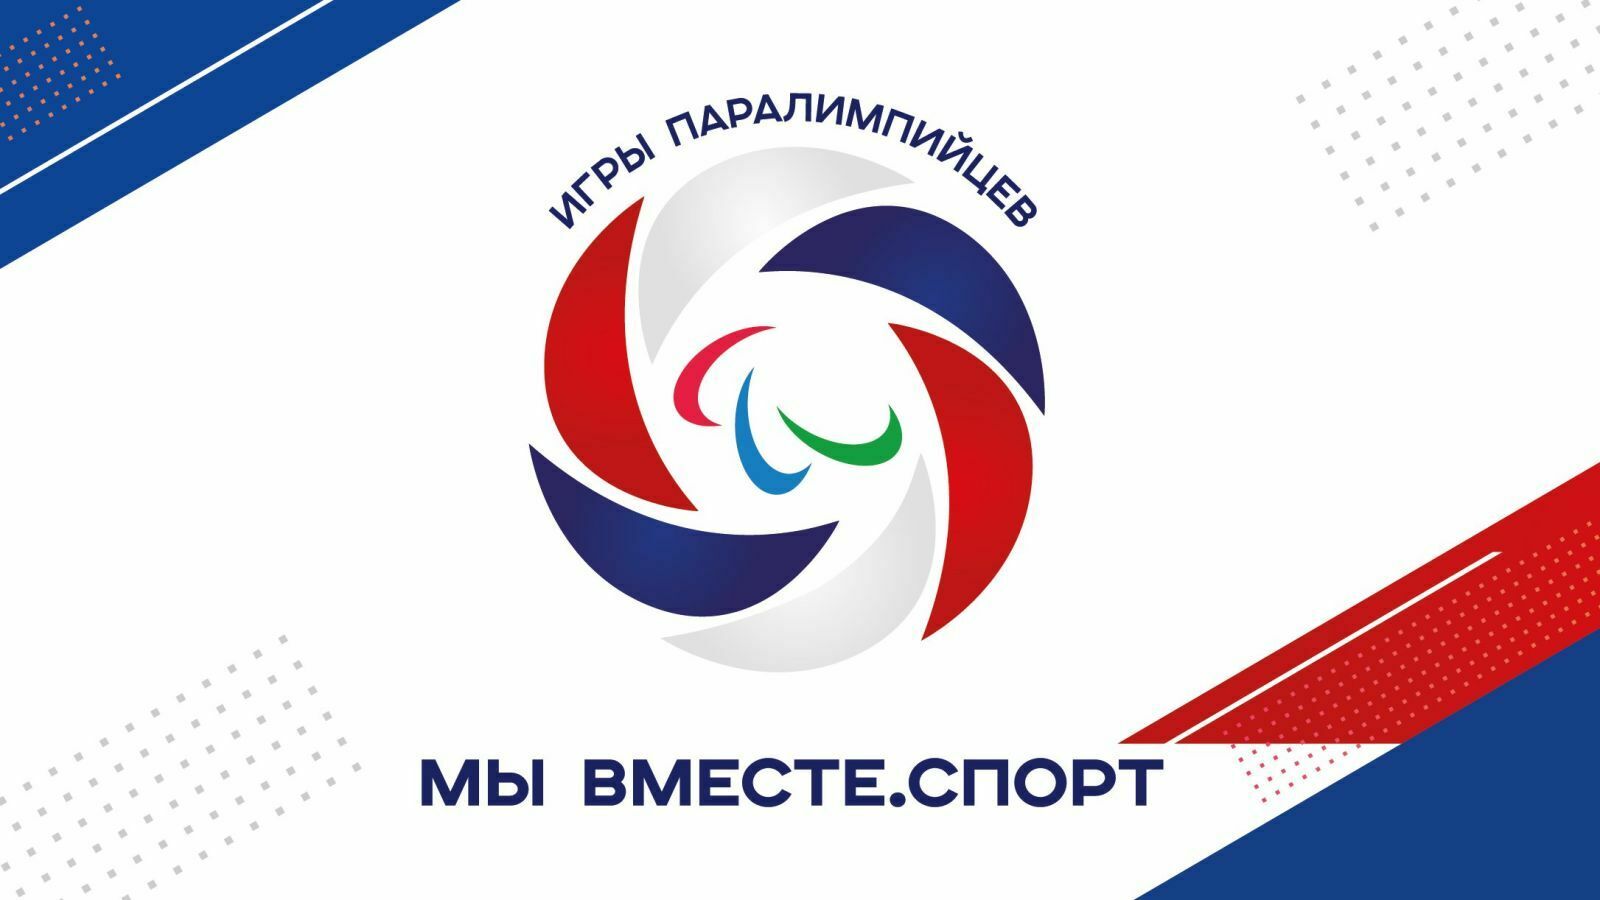 Спортсмены Башкирии готовы к высоким результатам в летних паралимпийских играх в Сочи